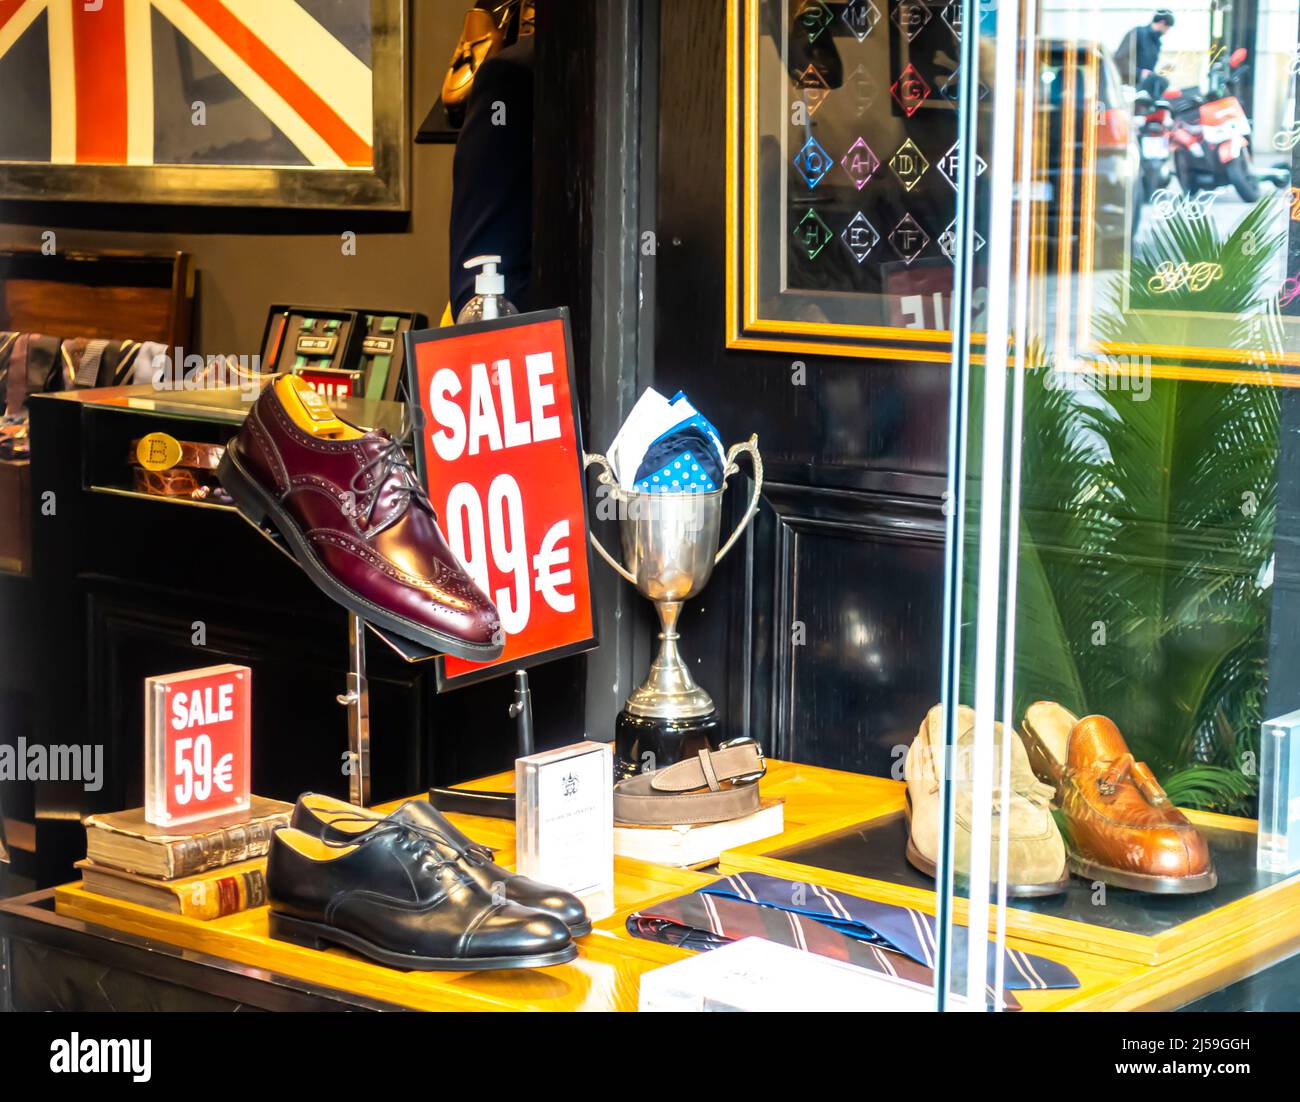 Bow-Tie Britische Schuhe Schaufenster mit Sale Tags und Preis für EUR 99. Madrid, Spanien Stockfoto